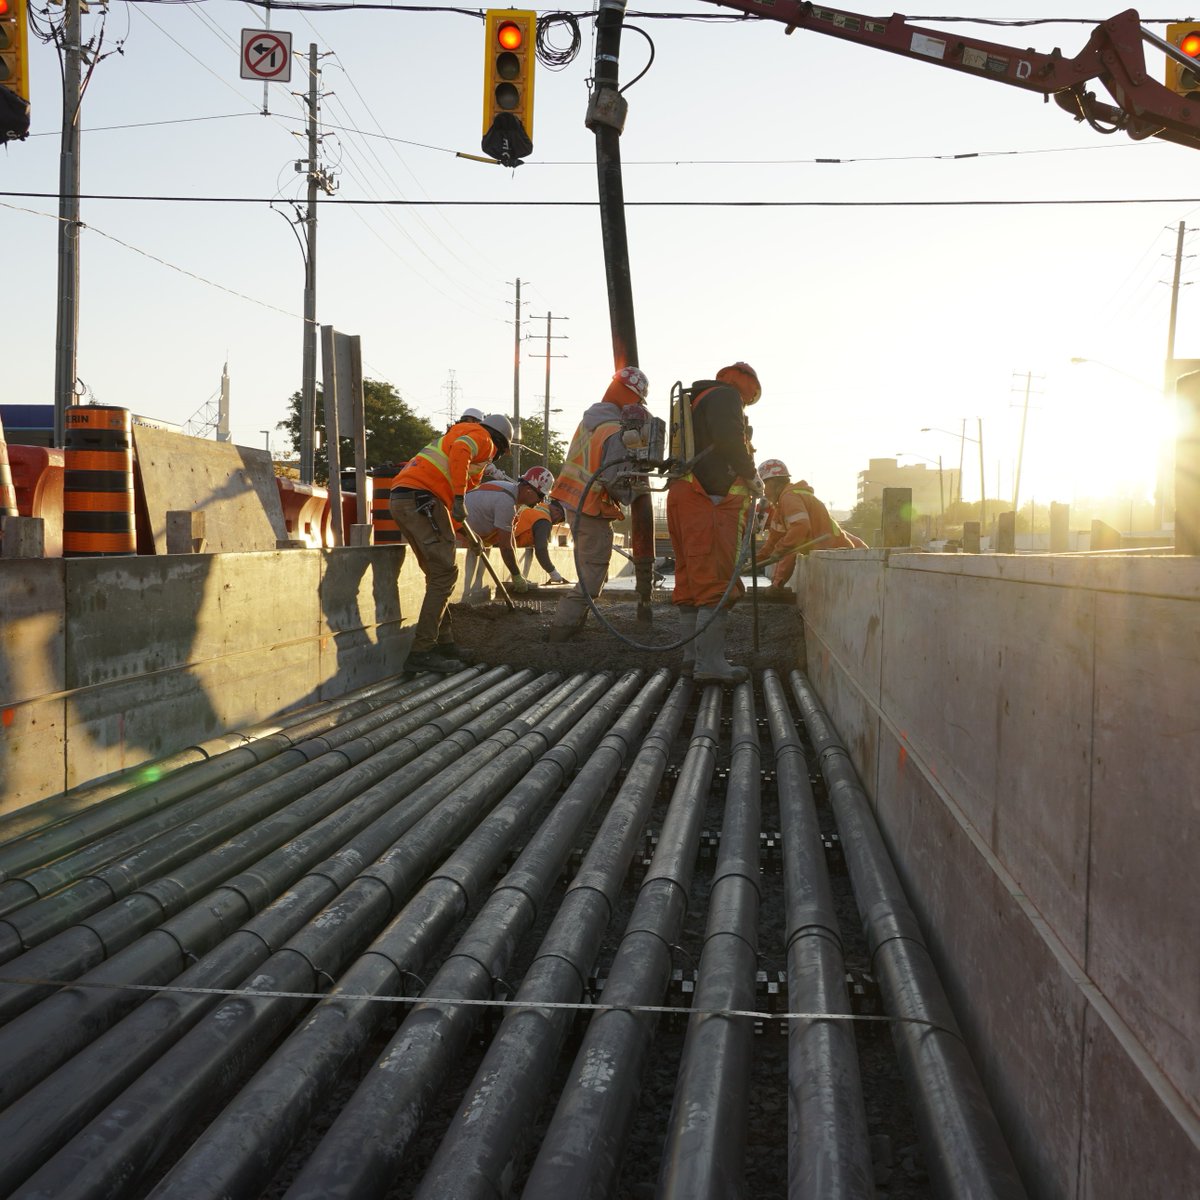 Huge news! Finch West LRT's guideway, track slab, and duct bank are 100% complete! Exciting progress continues! Importante nouvelle! La voie de guidage, les dalles de voie et les canalisations du TLR de Finch West sont terminées à 100 %. Des progrès encourageants continuent!